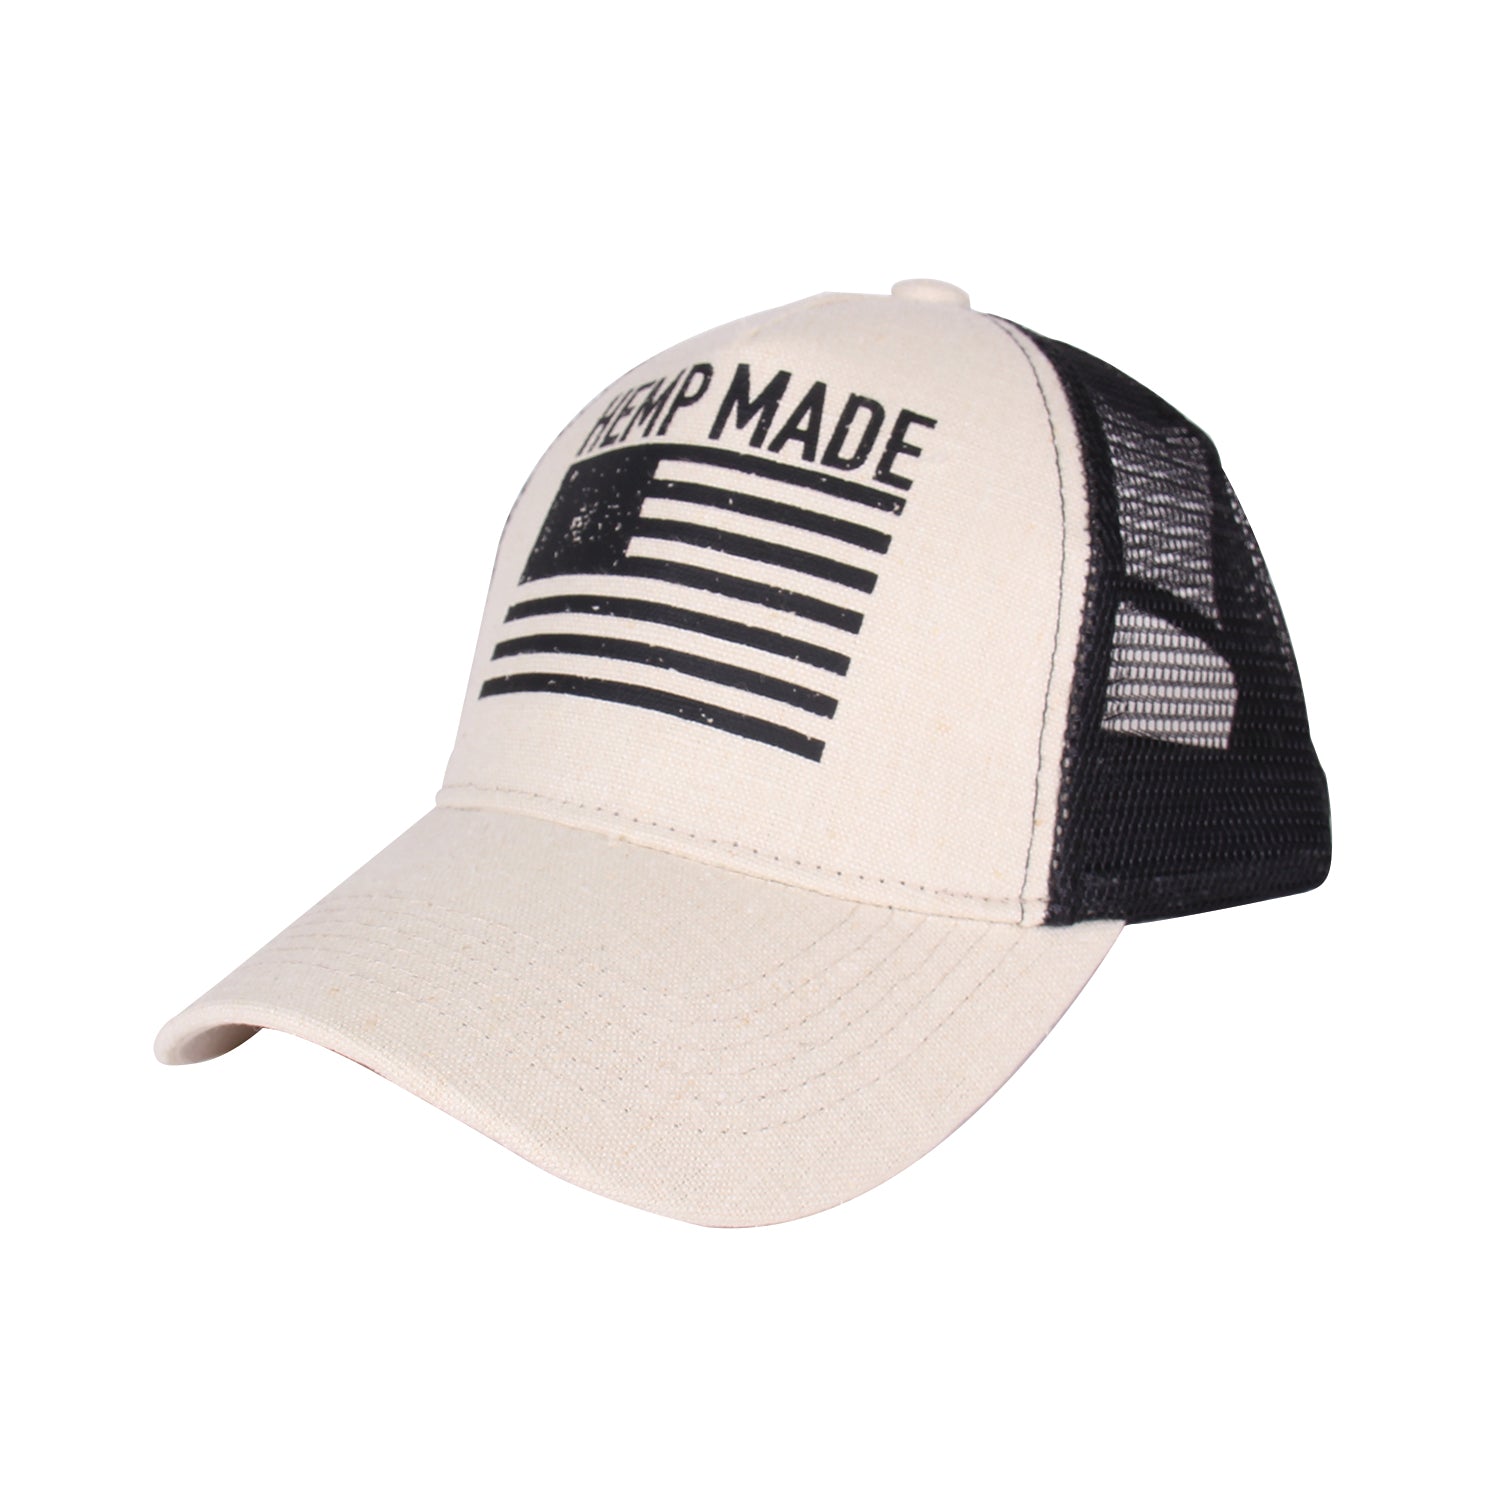 Trucker Hat HEMP MADE (Natural) - Hemptique